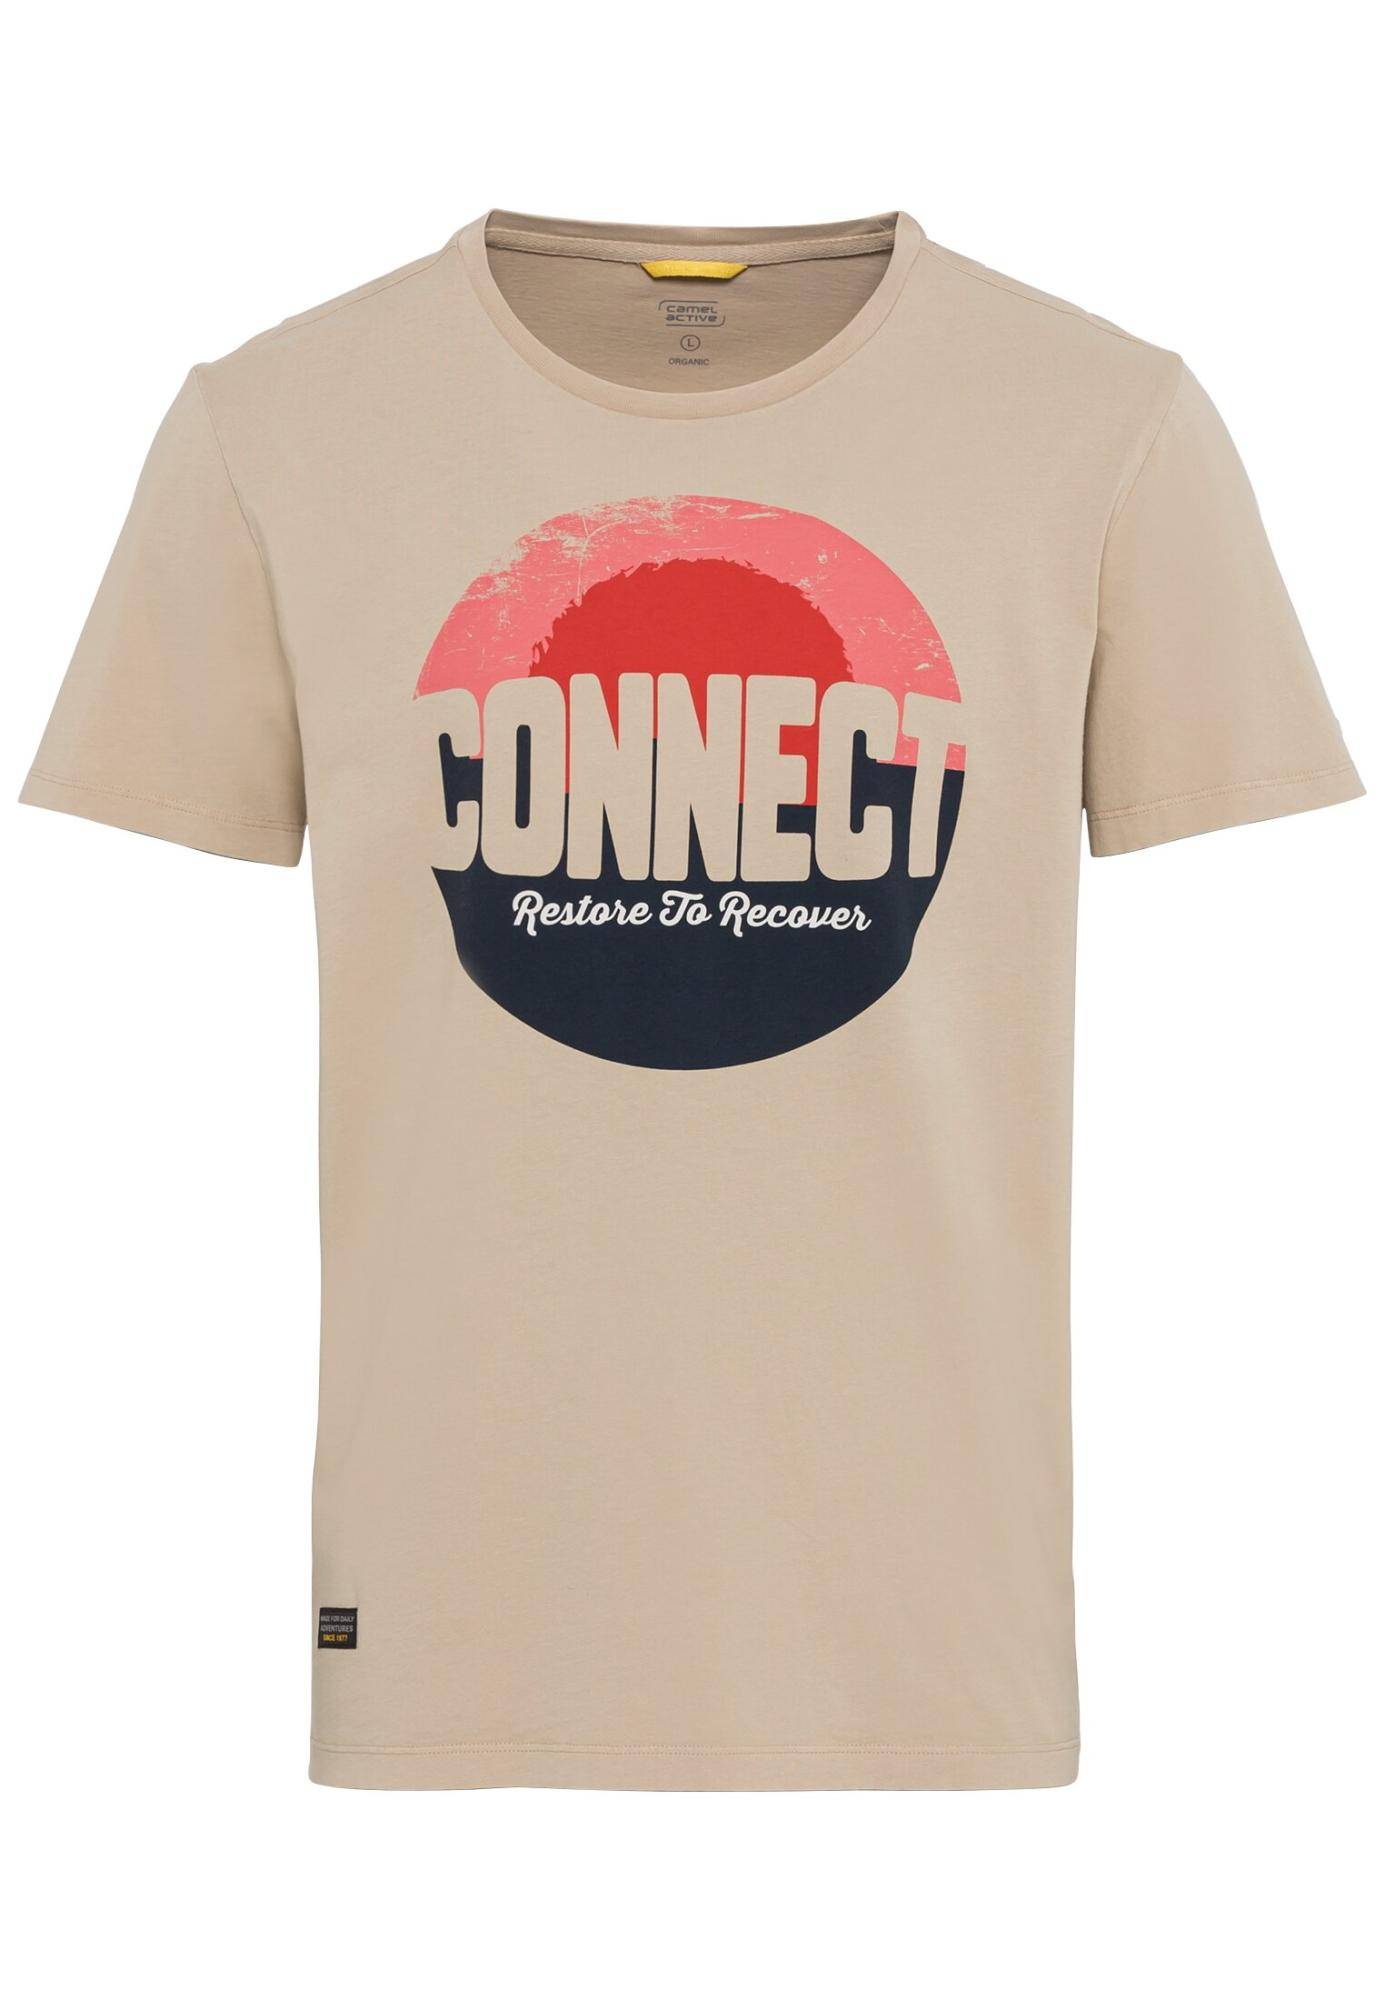 Мужская футболка Camel Active, песочная, цвет песочный, размер 56 - фото 1